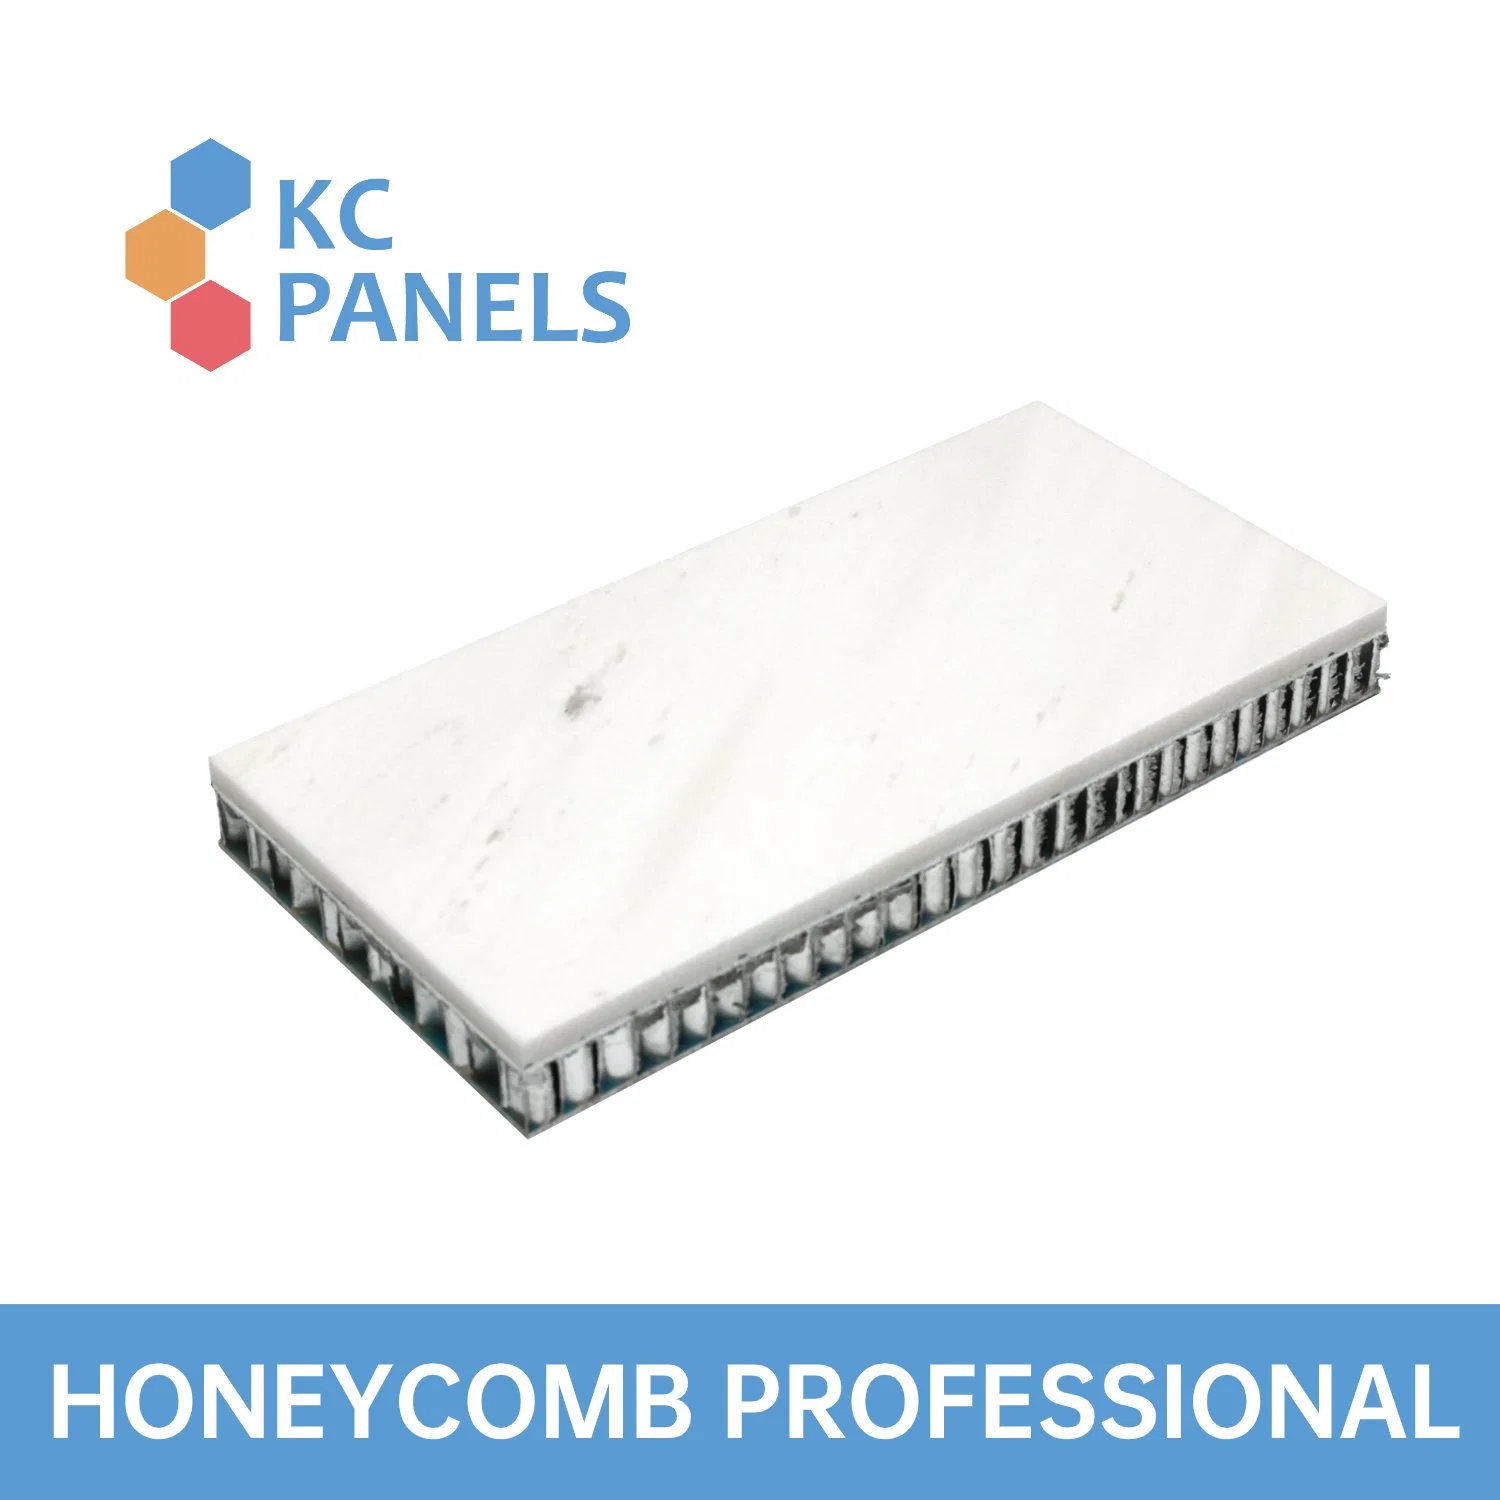 Carrelage de marbre naturel de 5 mm sur le panneau d'Honeycomb panneaux de pierre feuille en aluminium léger